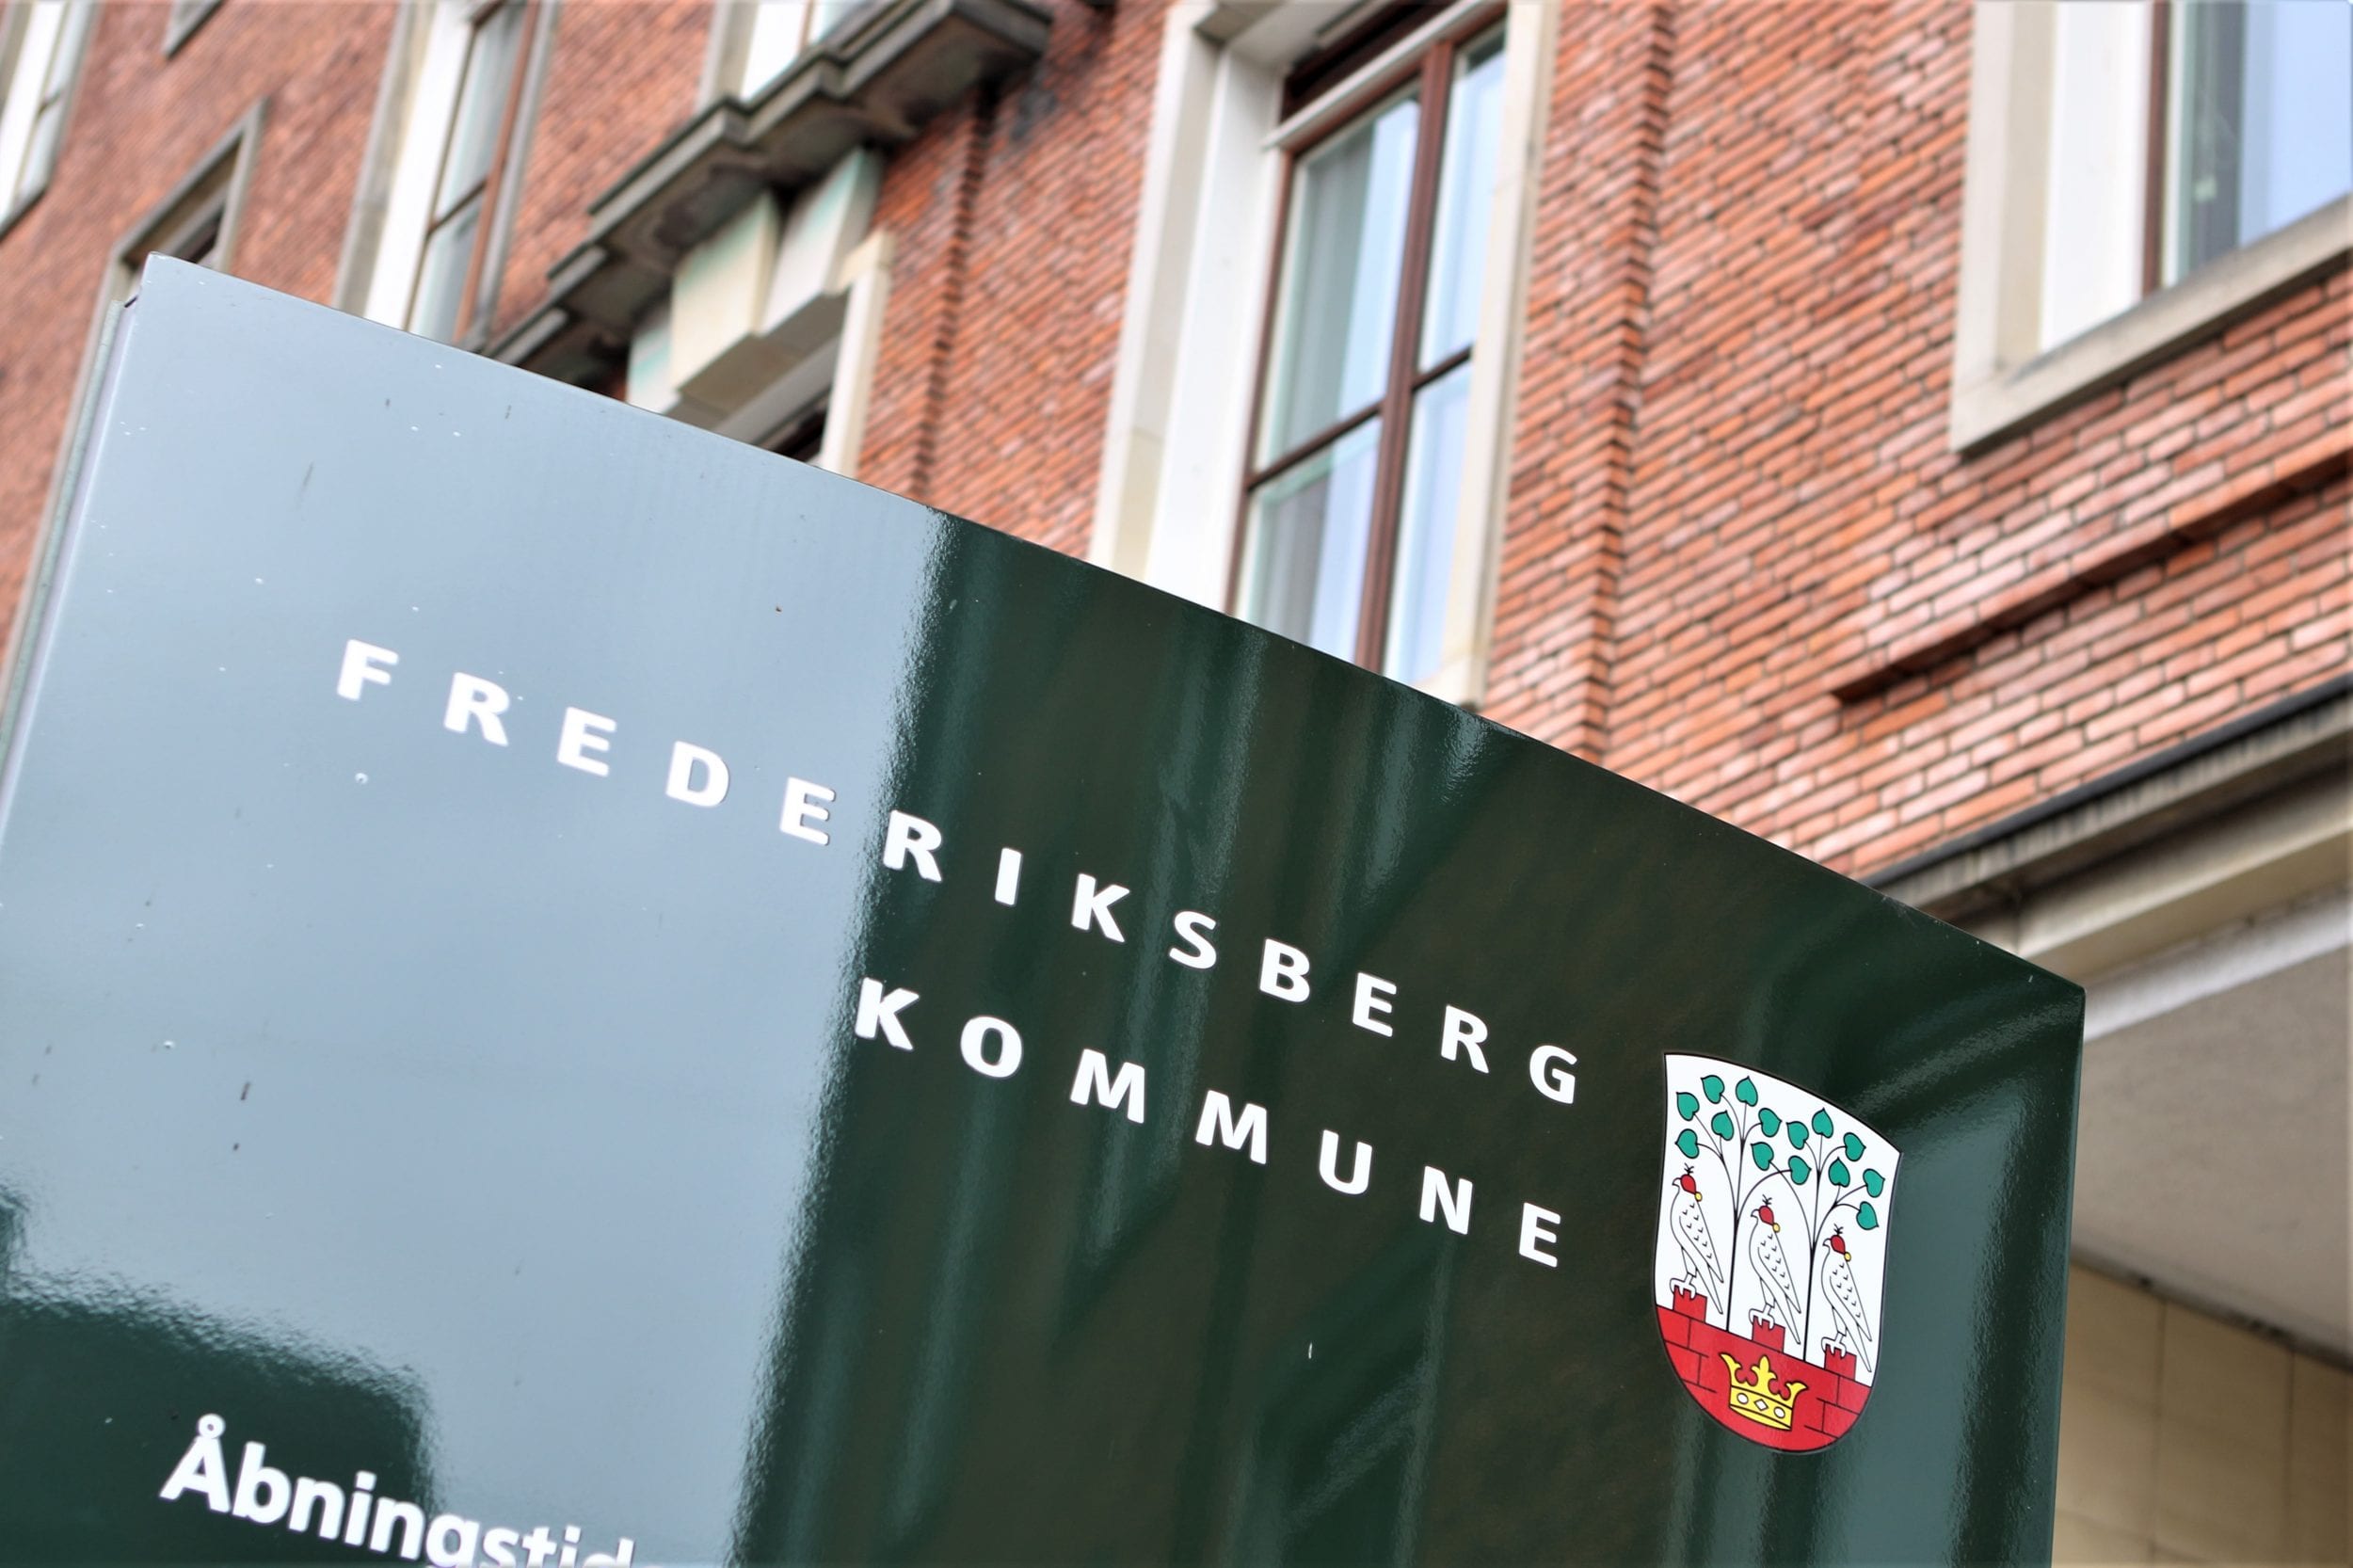 Frederiksberg navngiver to pladser langs Den Grønne Sti